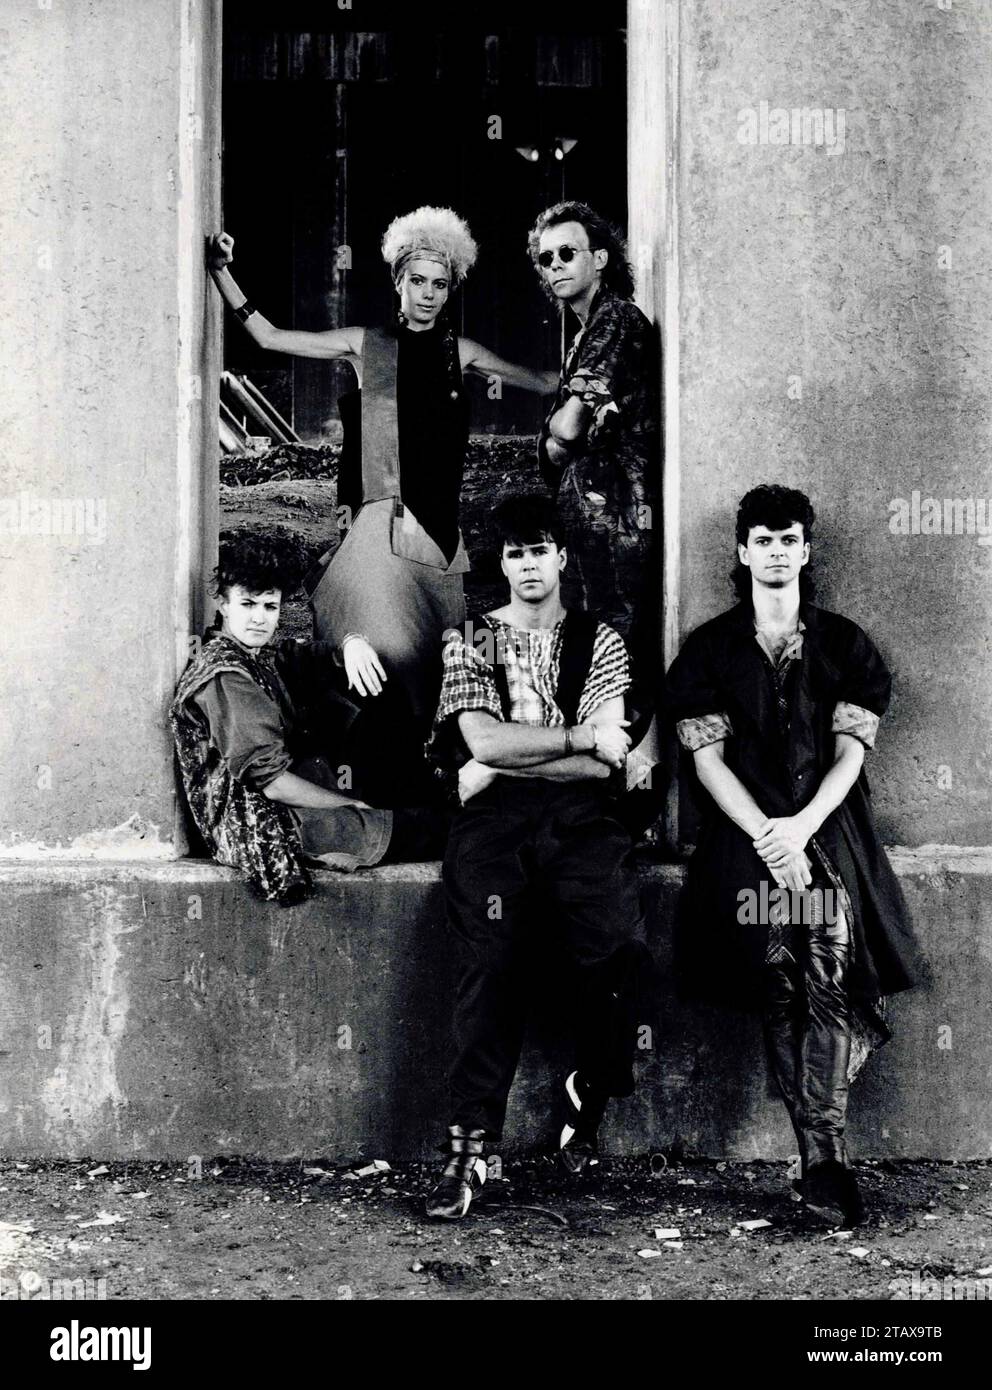 South African Band October. Dalla collezione - musicisti sudafricani anni '1980 - archivio fotografico Don Minnaar Foto Stock